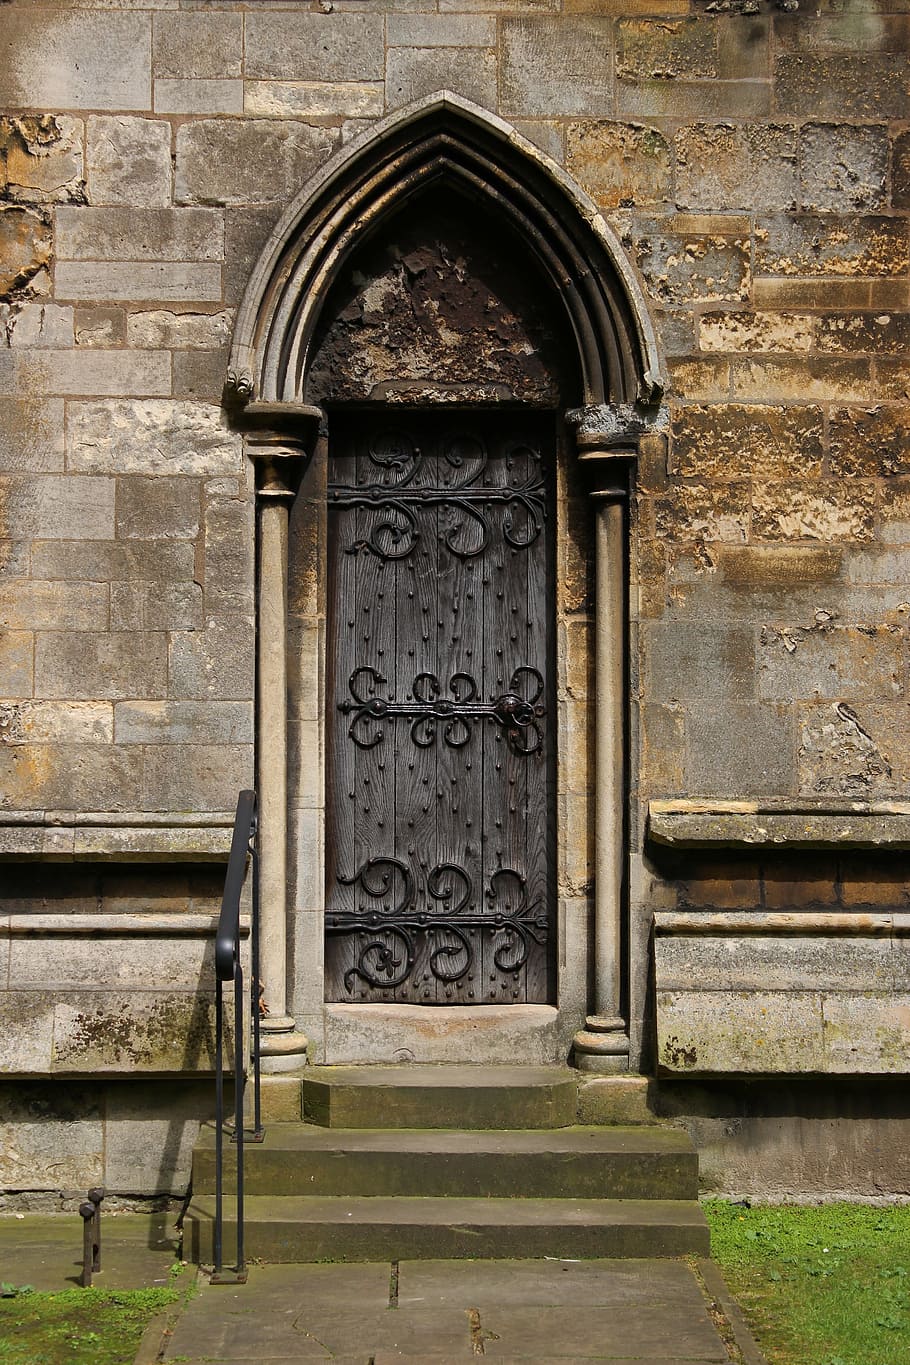 tertutup, abu-abu, hitam, kayu, pintu, dekorasi baja, portal, abad pertengahan, arsitektur, pintu masuk